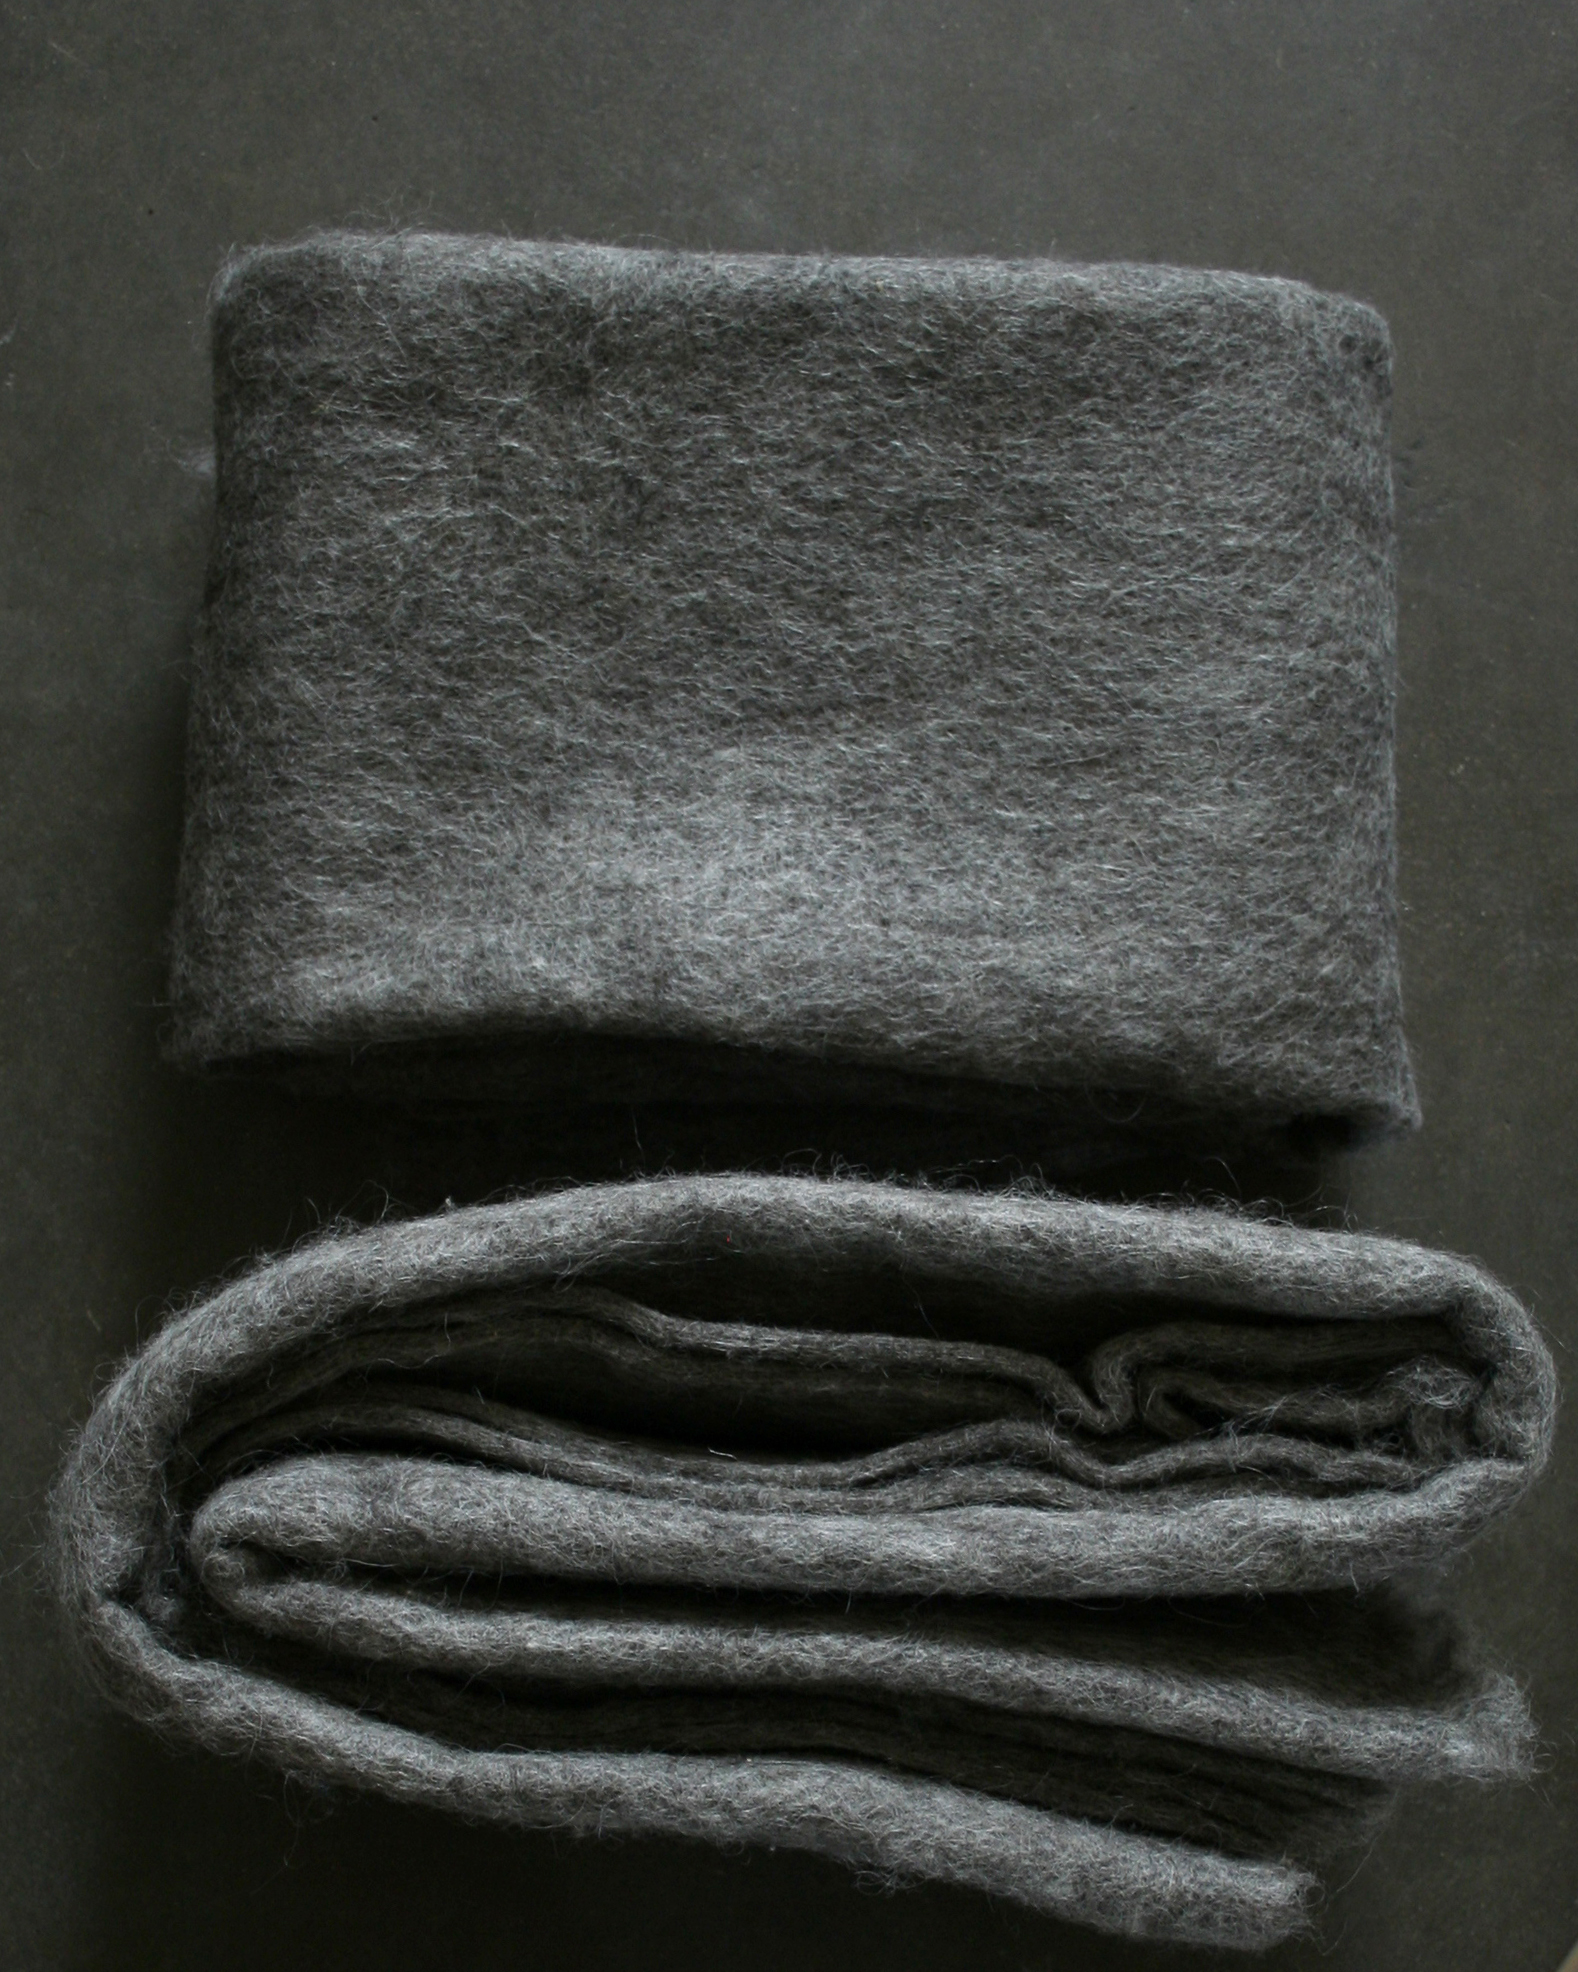 Filtmakeriets SVIA varm grå. Nålfilt för tovning av 100 % svensk fårull